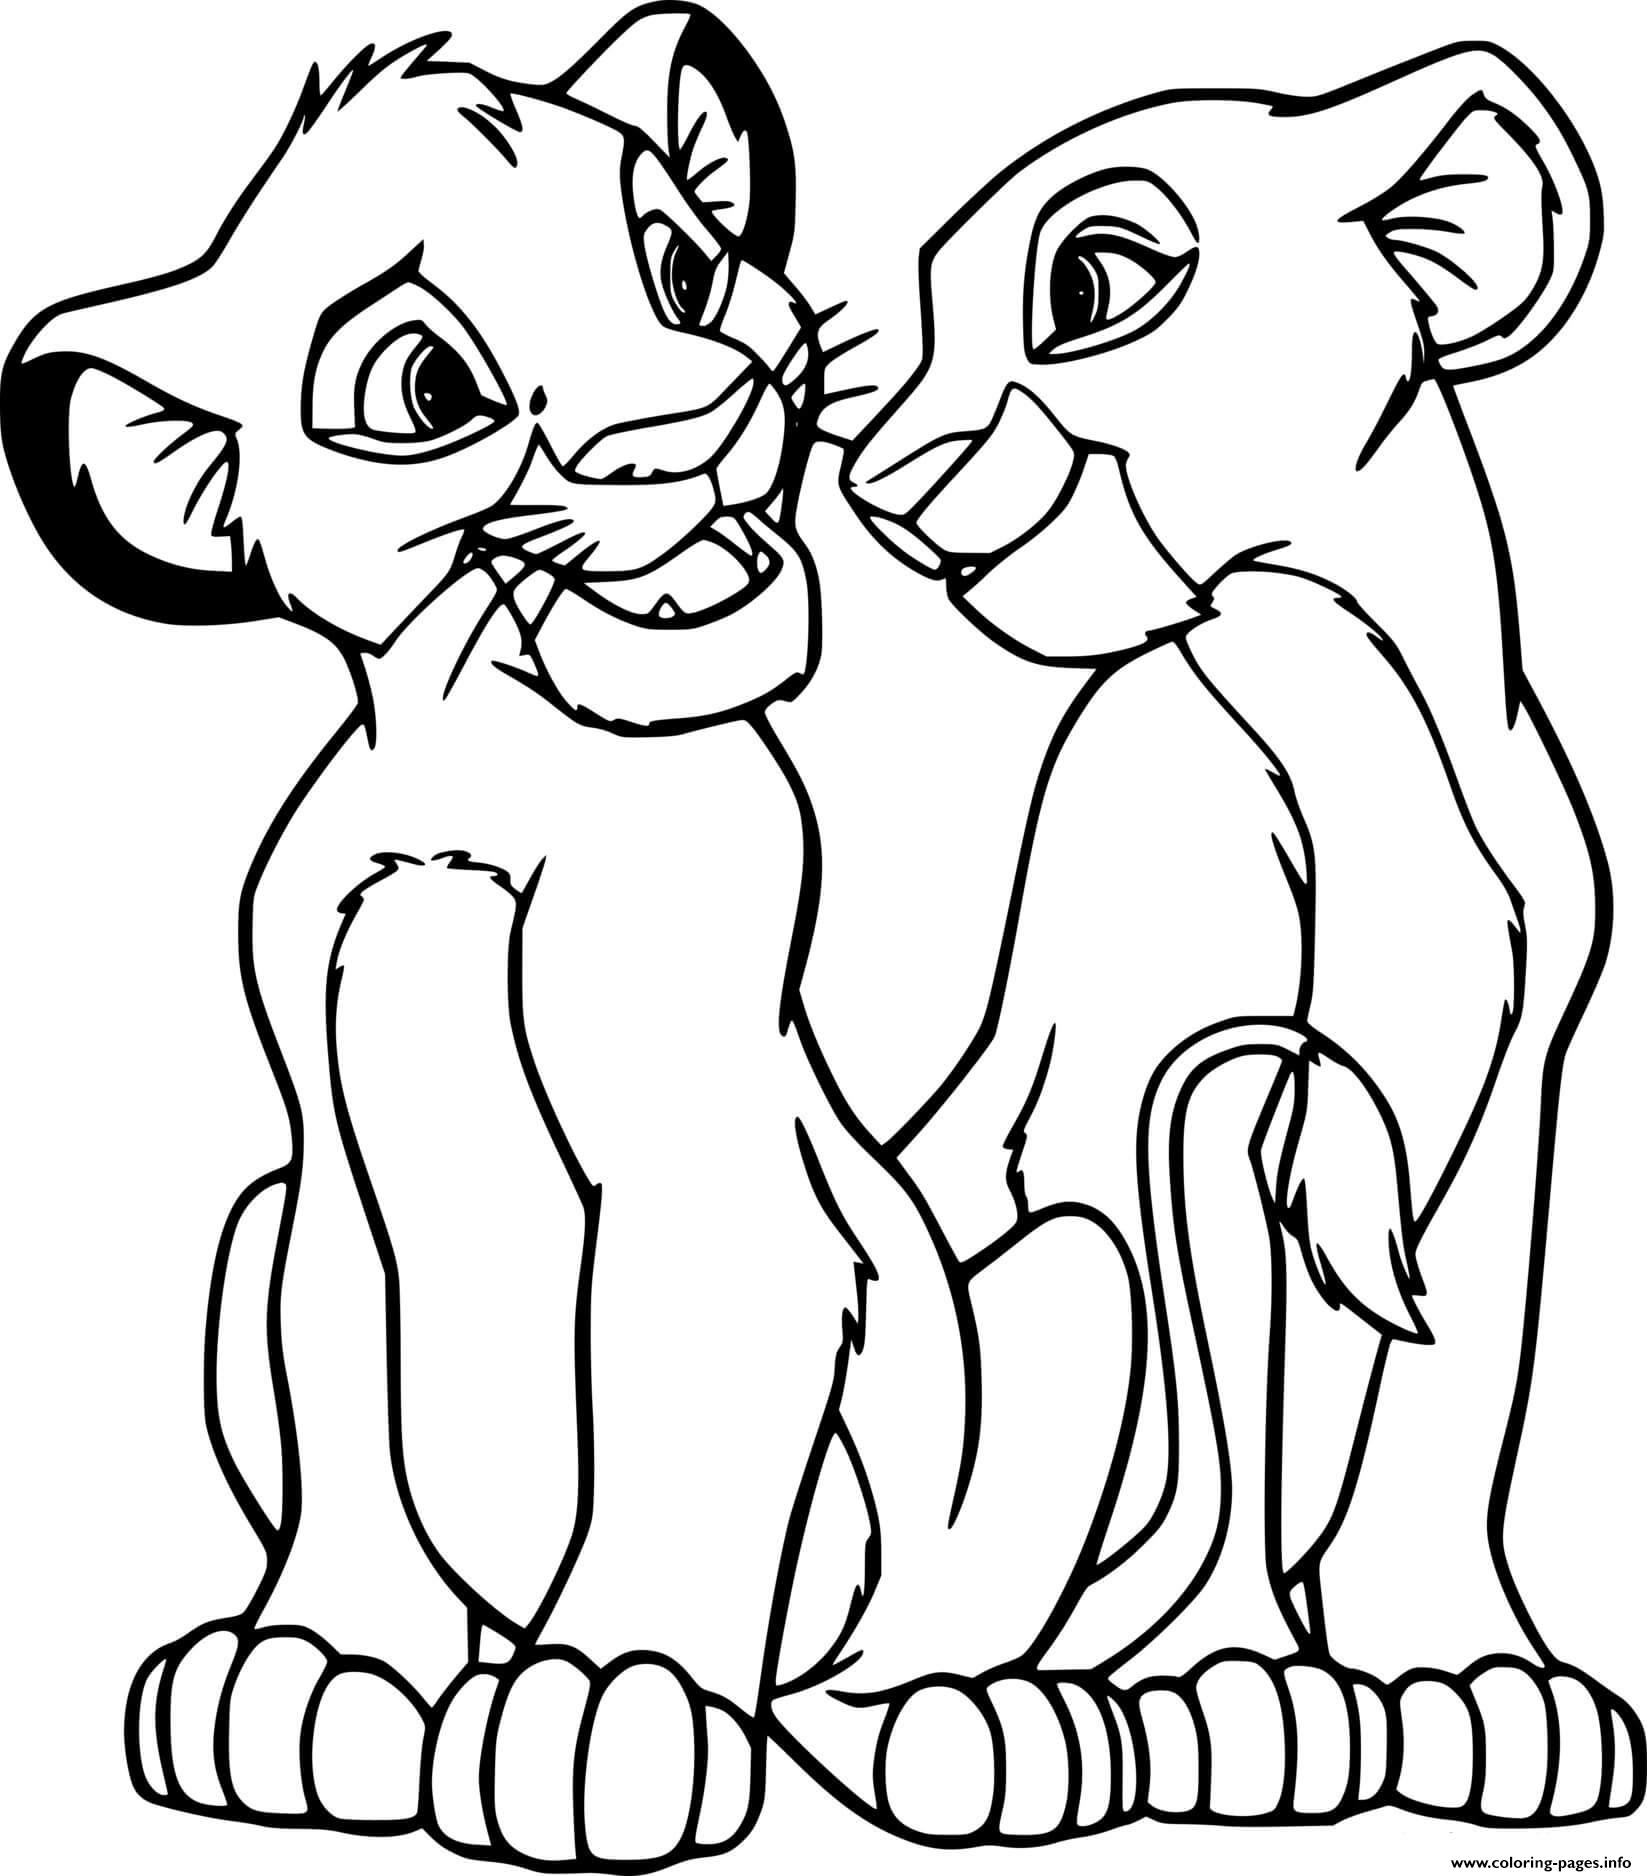 Young Simba And Nala coloring